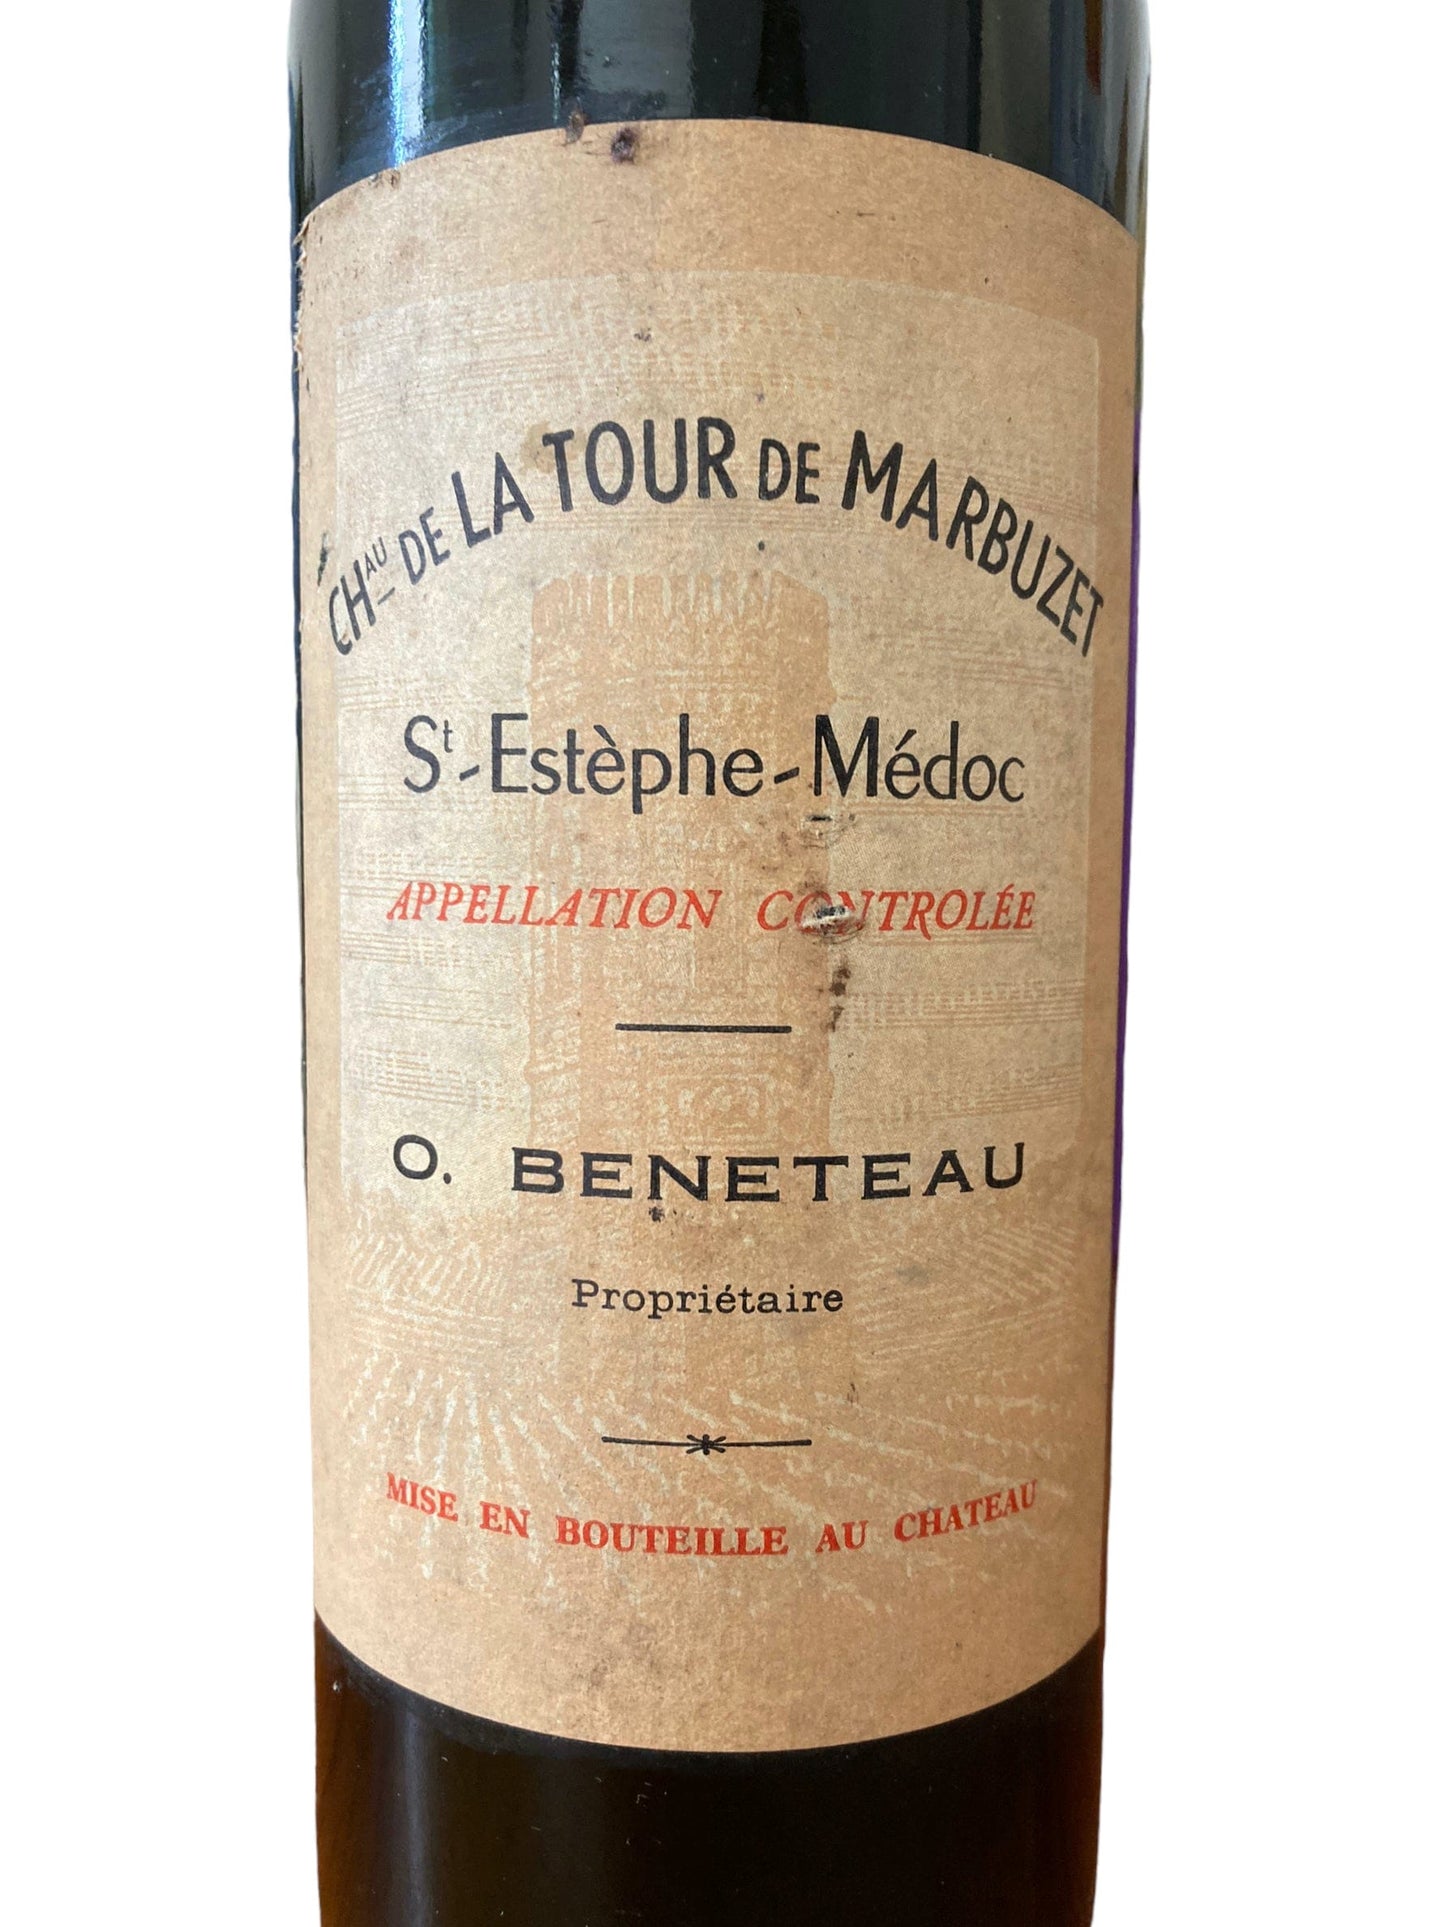 Vin ancien Saint Estèphe Chateau de la tour de marbuzet 1966